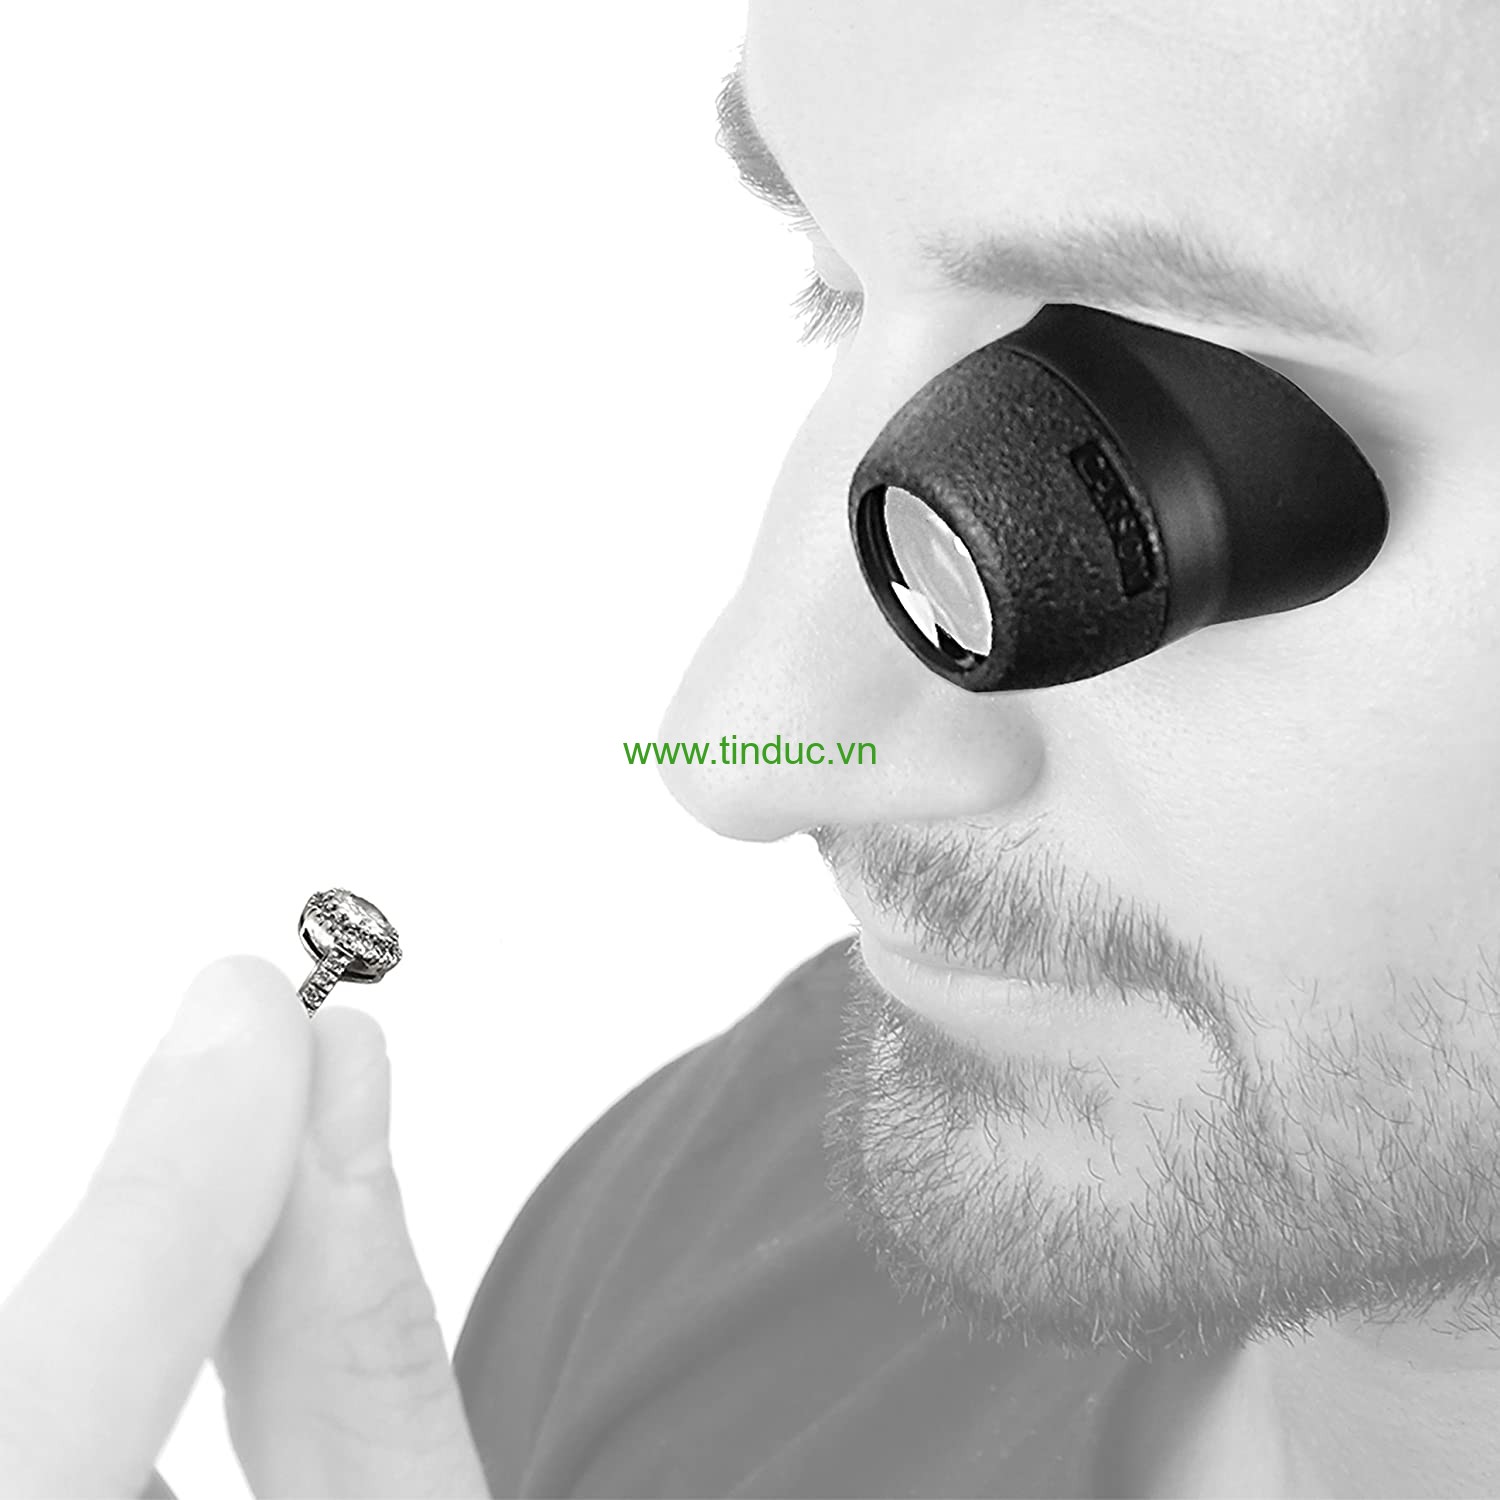 Bộ kính lúp sửa đồng hồ 4 mắt kính Carson MagniLoupe ML-20, 4,5x / 6,5x / 8x / 13x (kèm kẹp lắp điện thoại) (Hãng Carson - Mỹ)